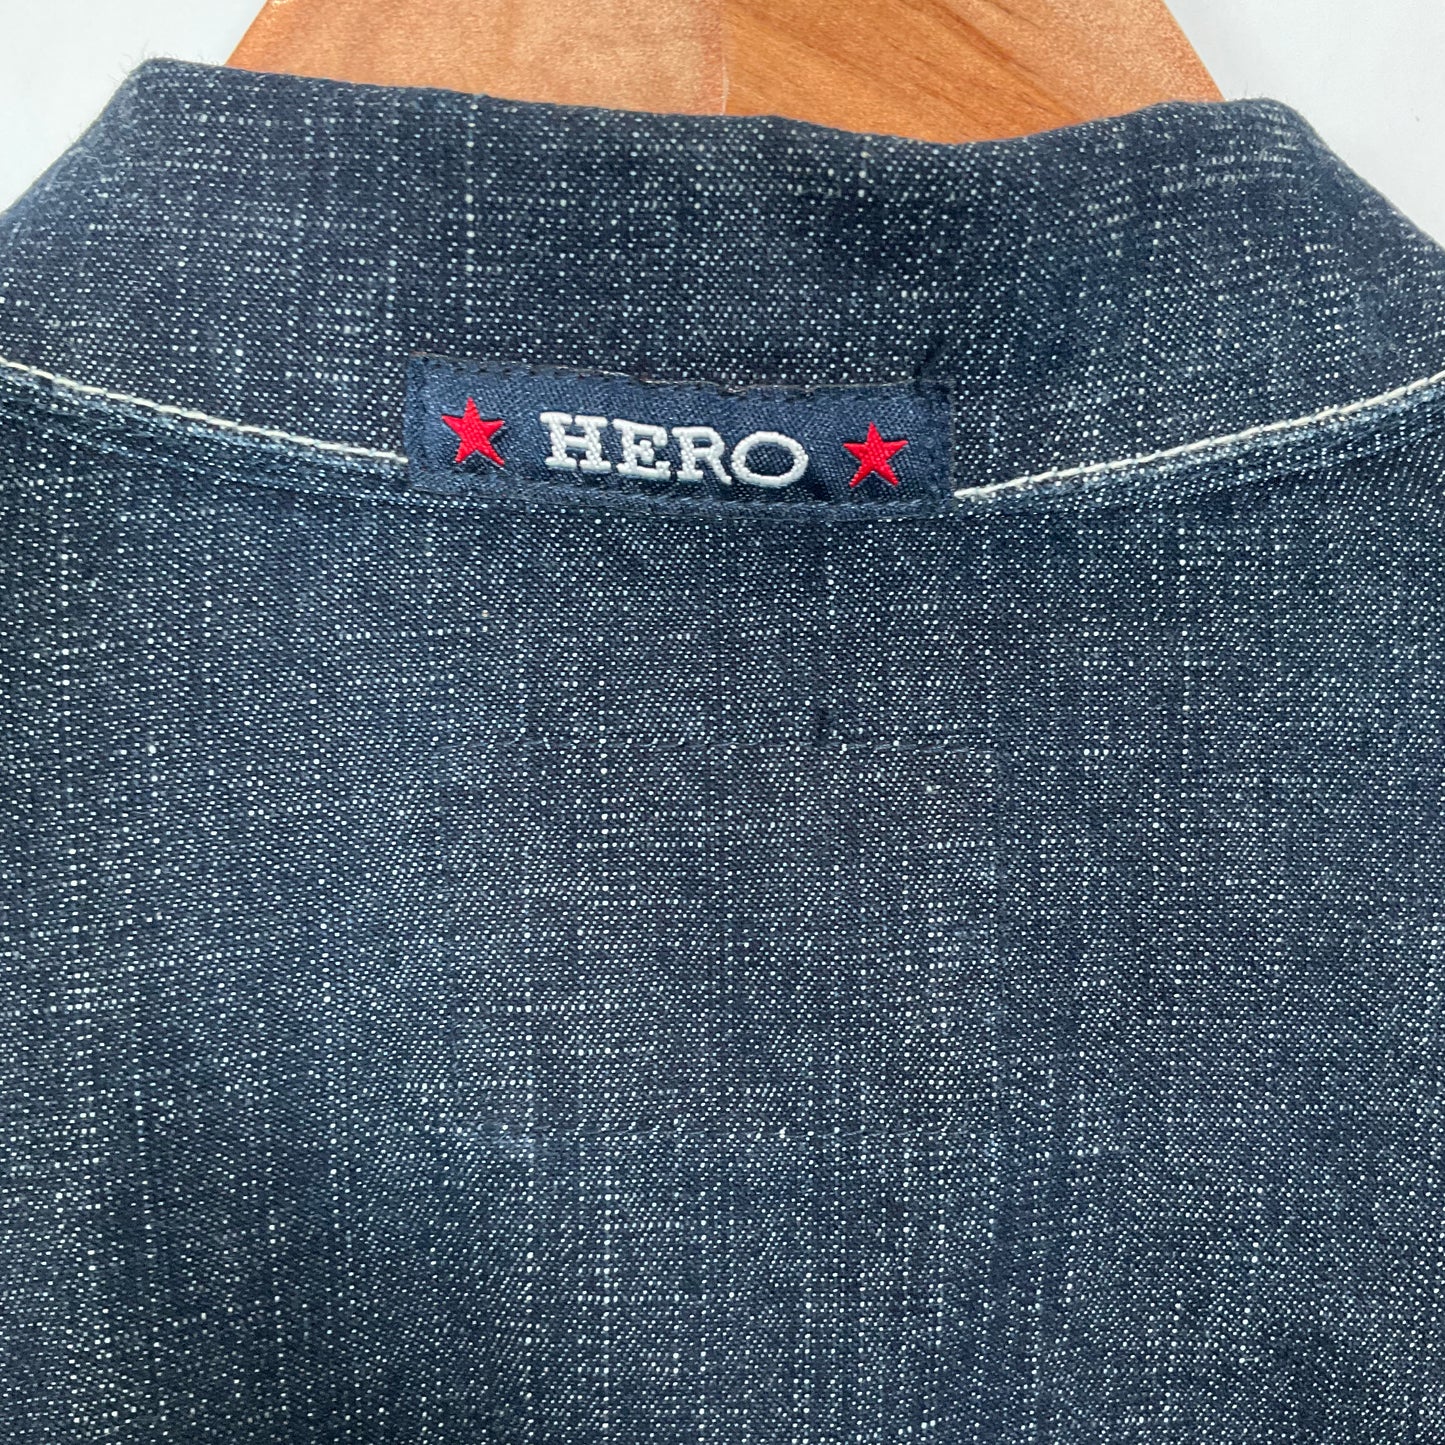 Hero - Jacket